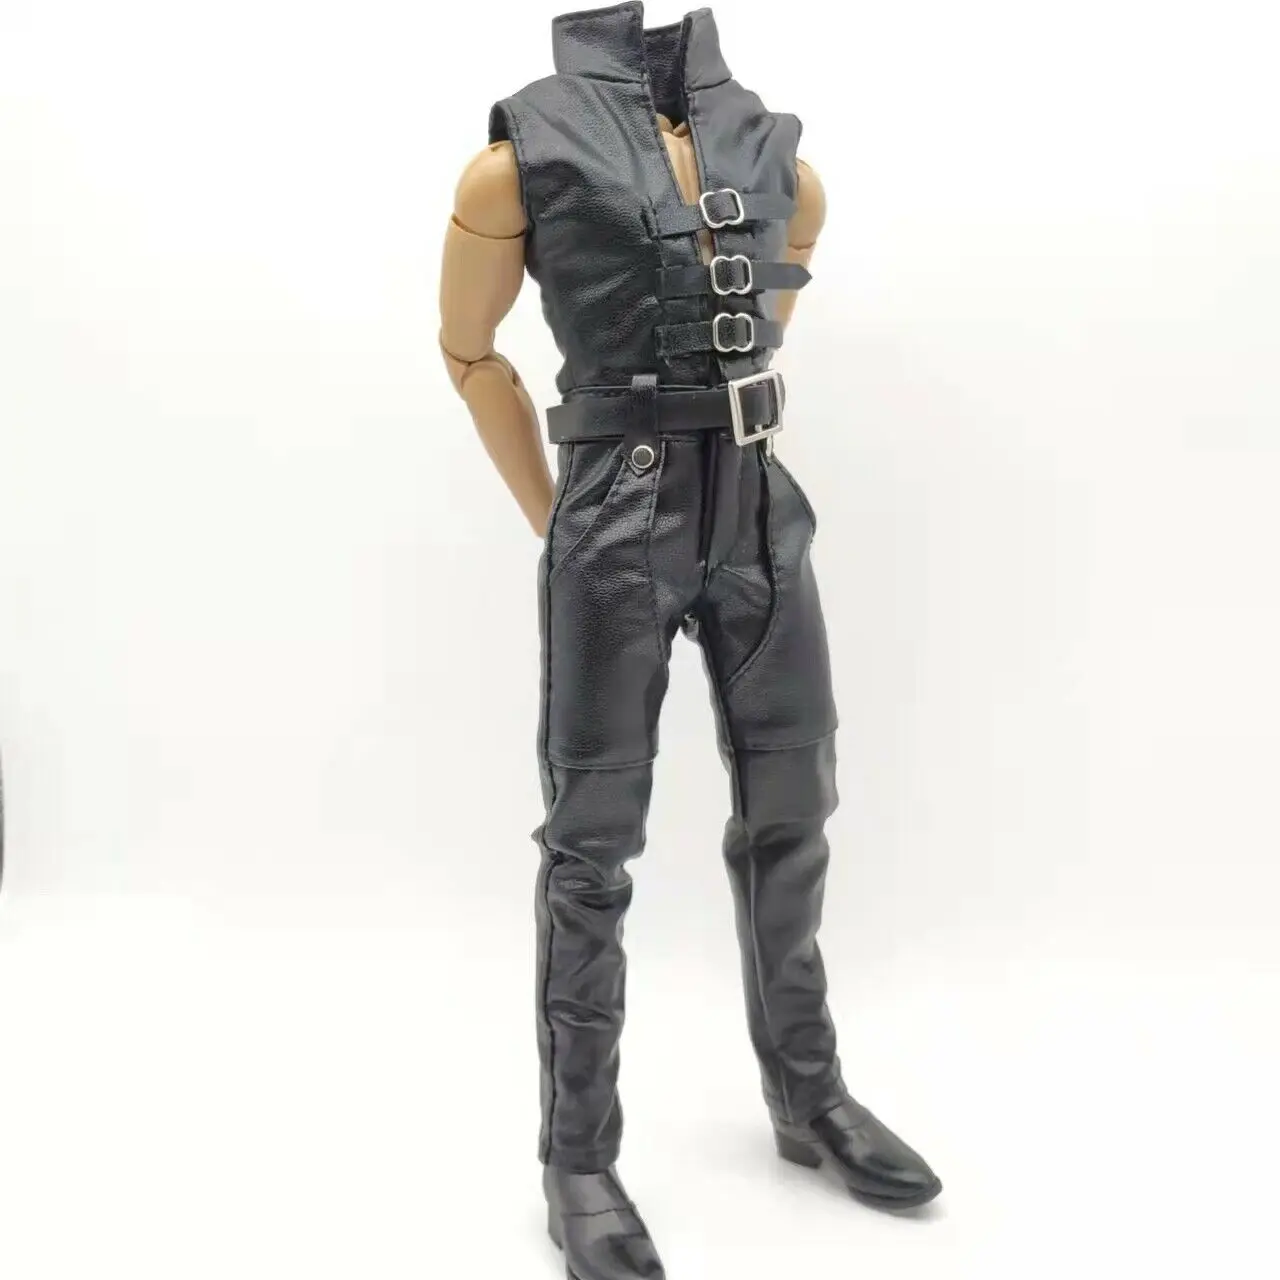 

Без рукавов масштаб 1/6 черный кожаный комбинезон пояс с обувью модель игрушка для 12-дюймовых экшн-фигурок кукол